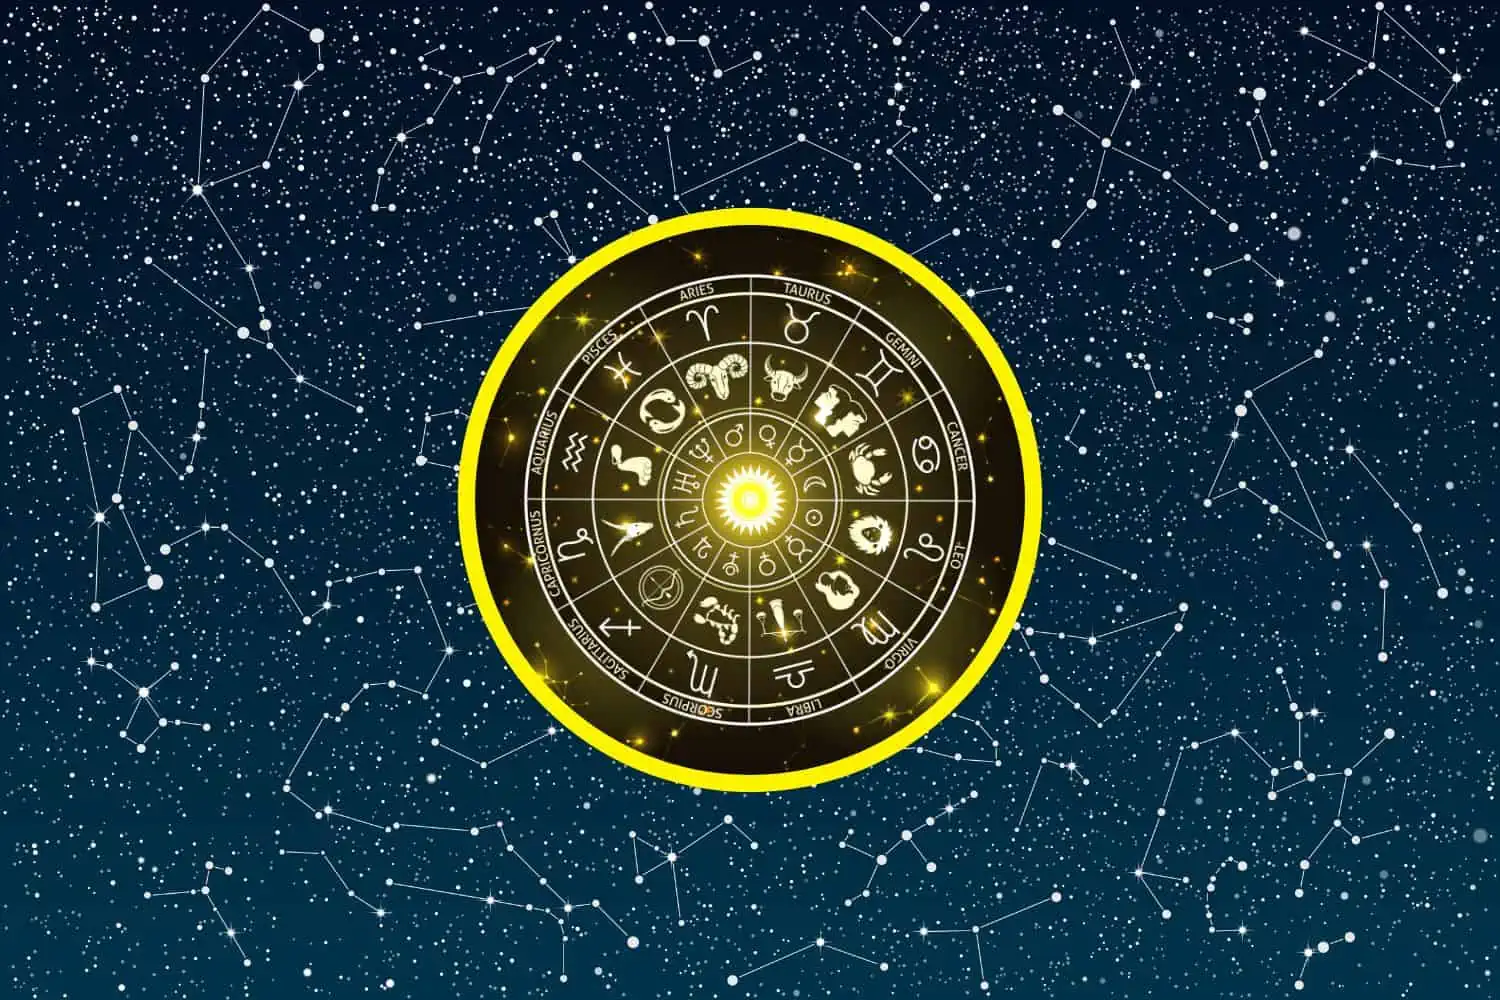 Today’s Free Horoscopes Wednesday 8 February 2023